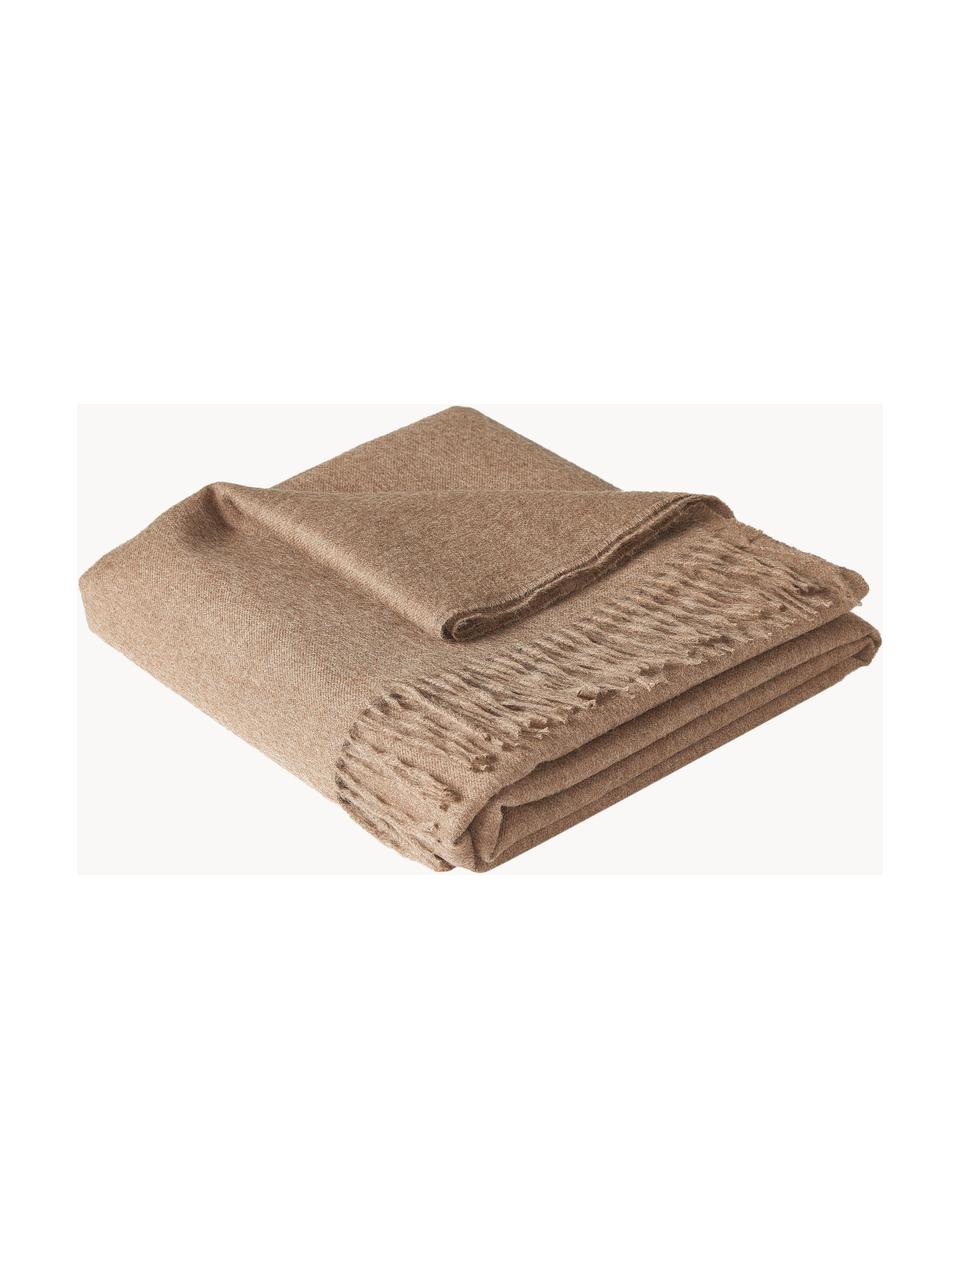 Plaid Luxury aus Babyalpaka-Wolle, 100 % Babyalpaka-Wolle

Diese Decke ist aus wunderbar weicher, hochwertiger Babyalpaka-Wolle gewebt. Sie schmeichelt der Haut und spendet wohlige Wärme, ist strapazierfähig aber dennoch leicht und besitzt hervorragende temperaturregulierende Eigenschaften. Dadurch ist diese Decke der perfekte Begleiter für kühle Sommerabende ebenso wie kalte Wintertage., Nougat, B 130 x L 200 cm